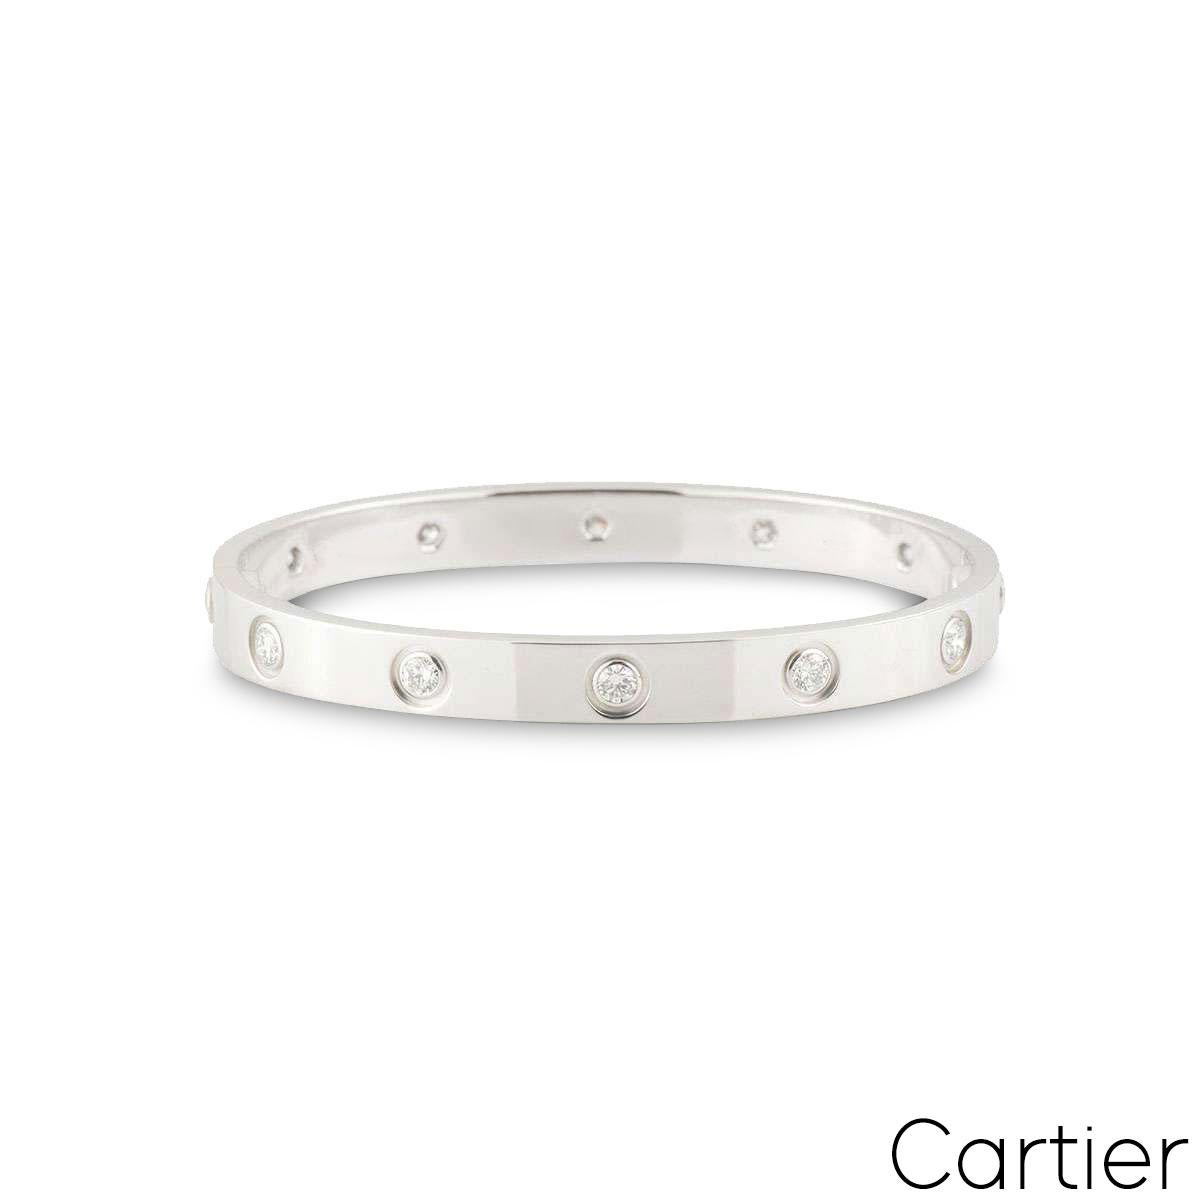 Ein ikonisches Cartier-Armband aus 18 Karat Weißgold mit Diamanten aus der Collection'S Love. Das Armband ist mit 10 runden Diamanten im Brillantschliff besetzt, die am äußeren Rand in einer Rubover-Fassung umlaufen. Das Armband hat die Größe 20,